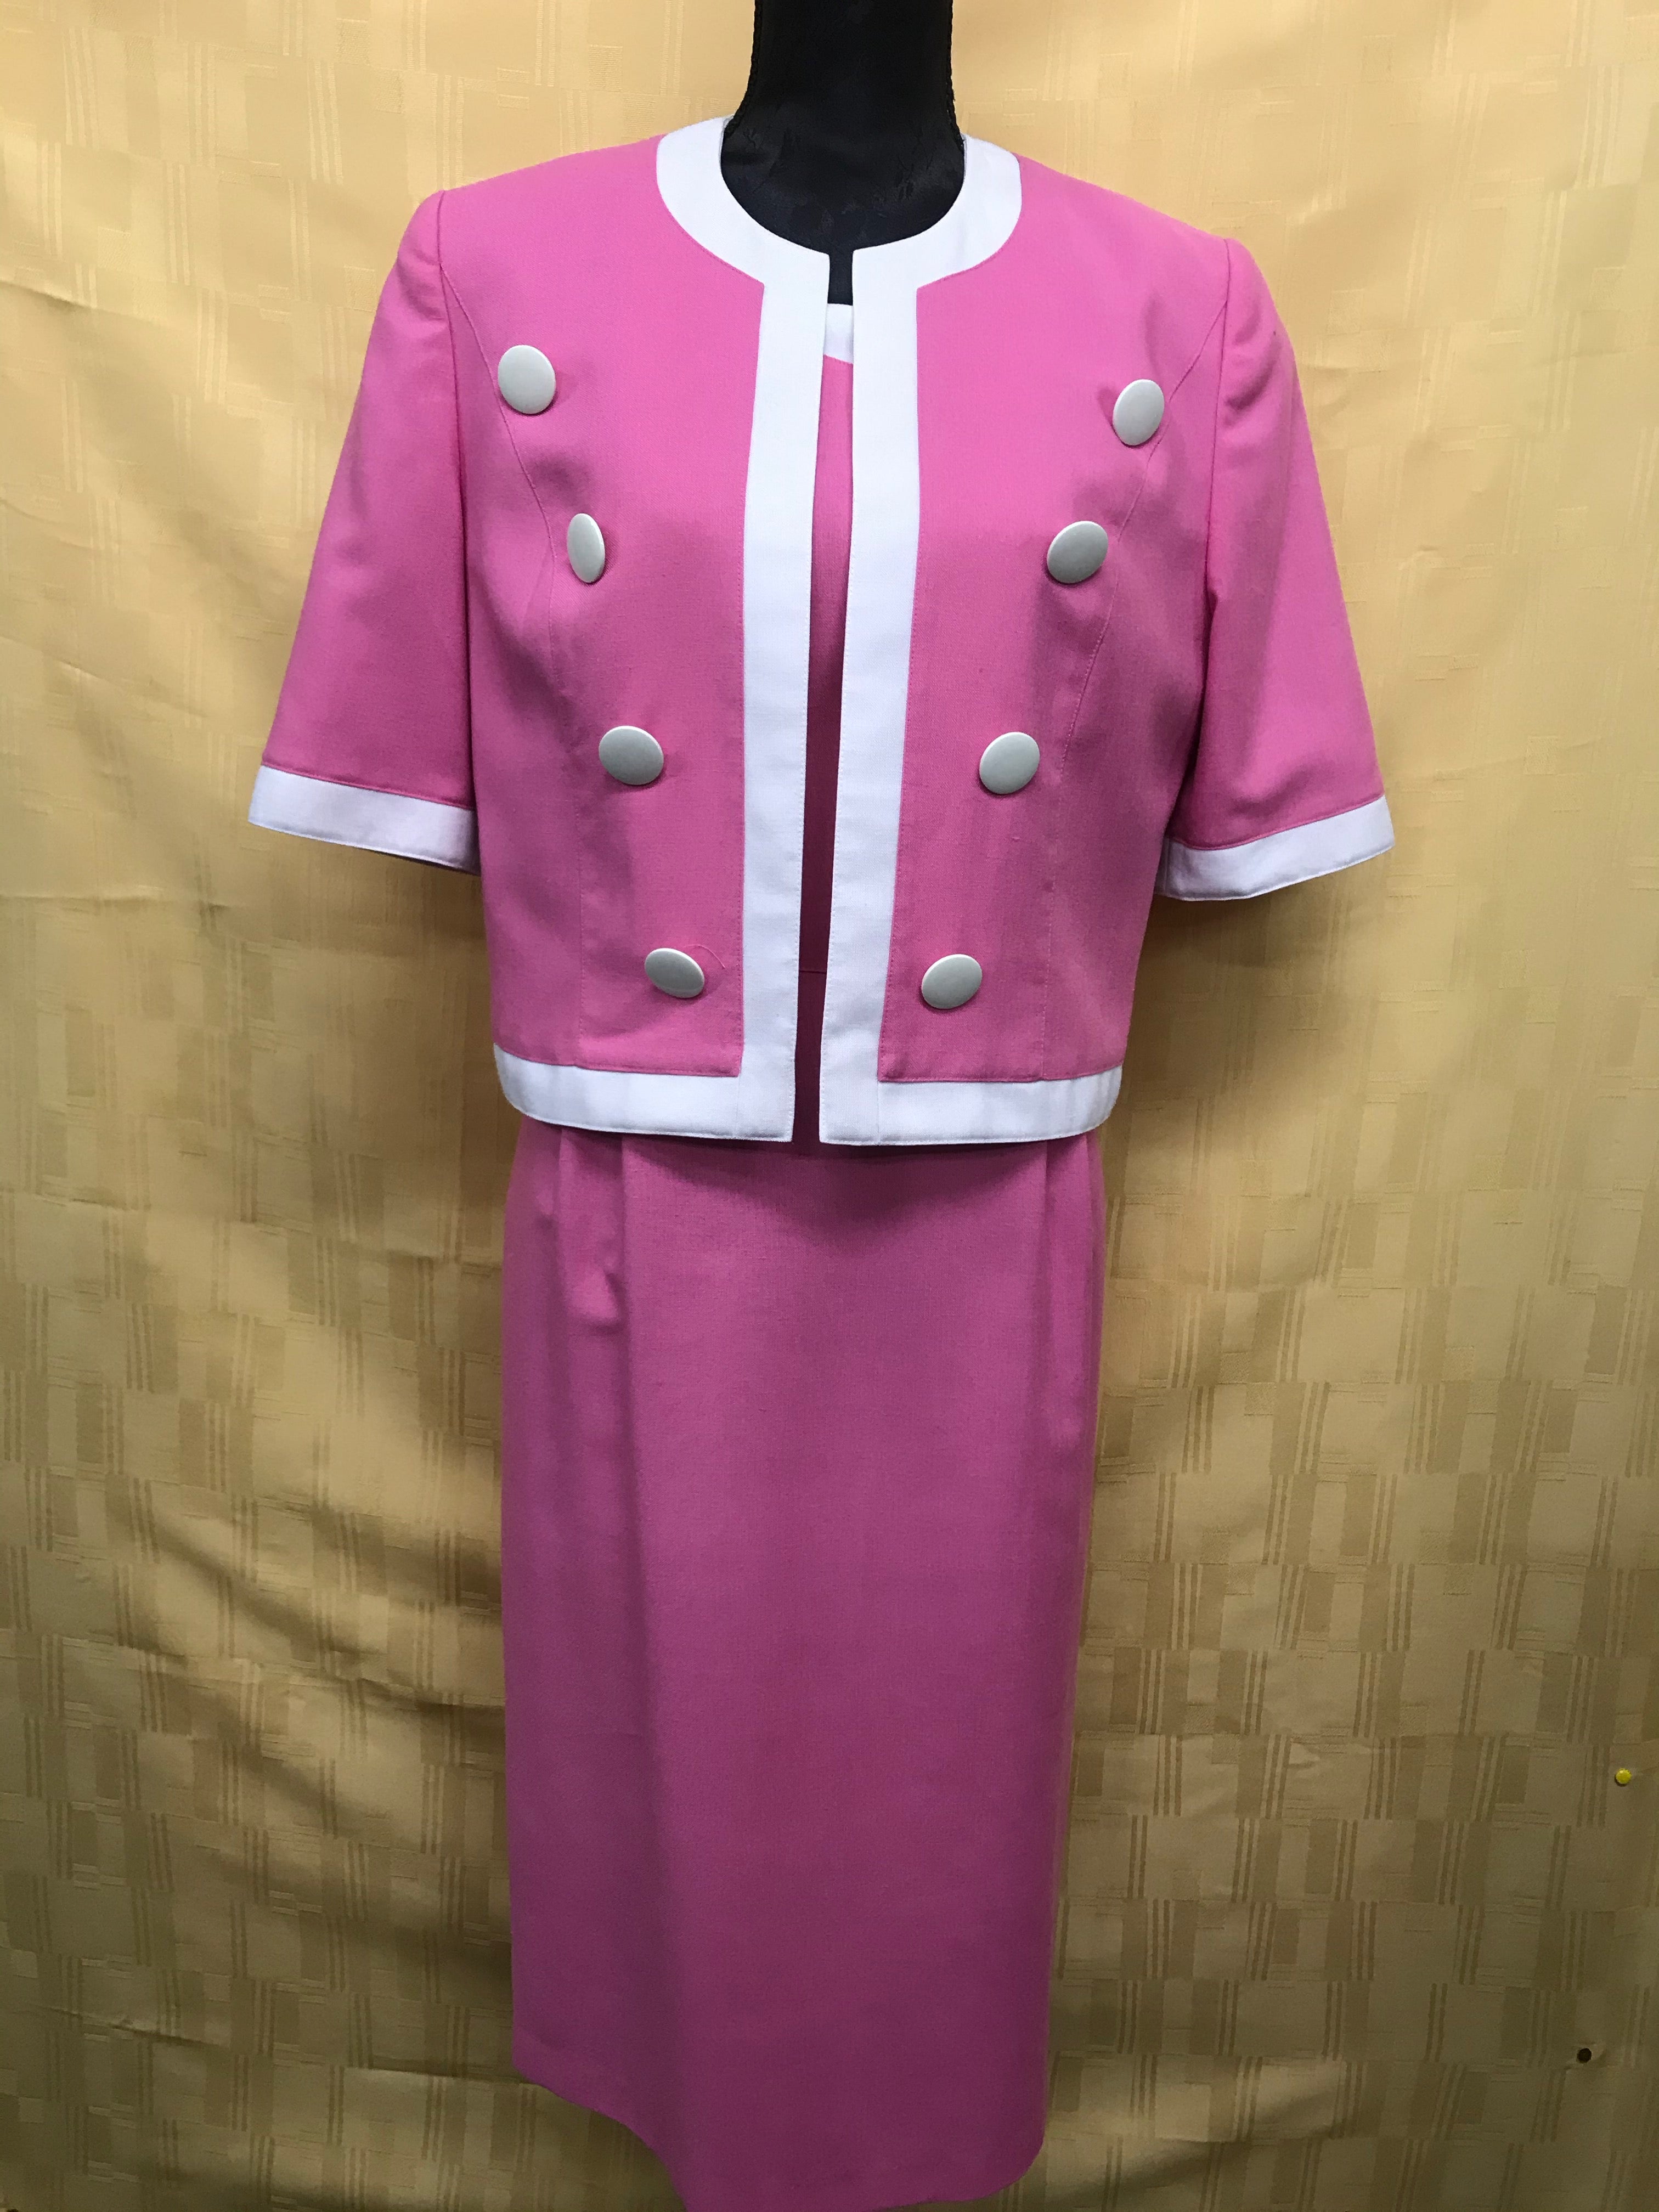 Vintage Kleid mit Jacke im Doris Day Stil 